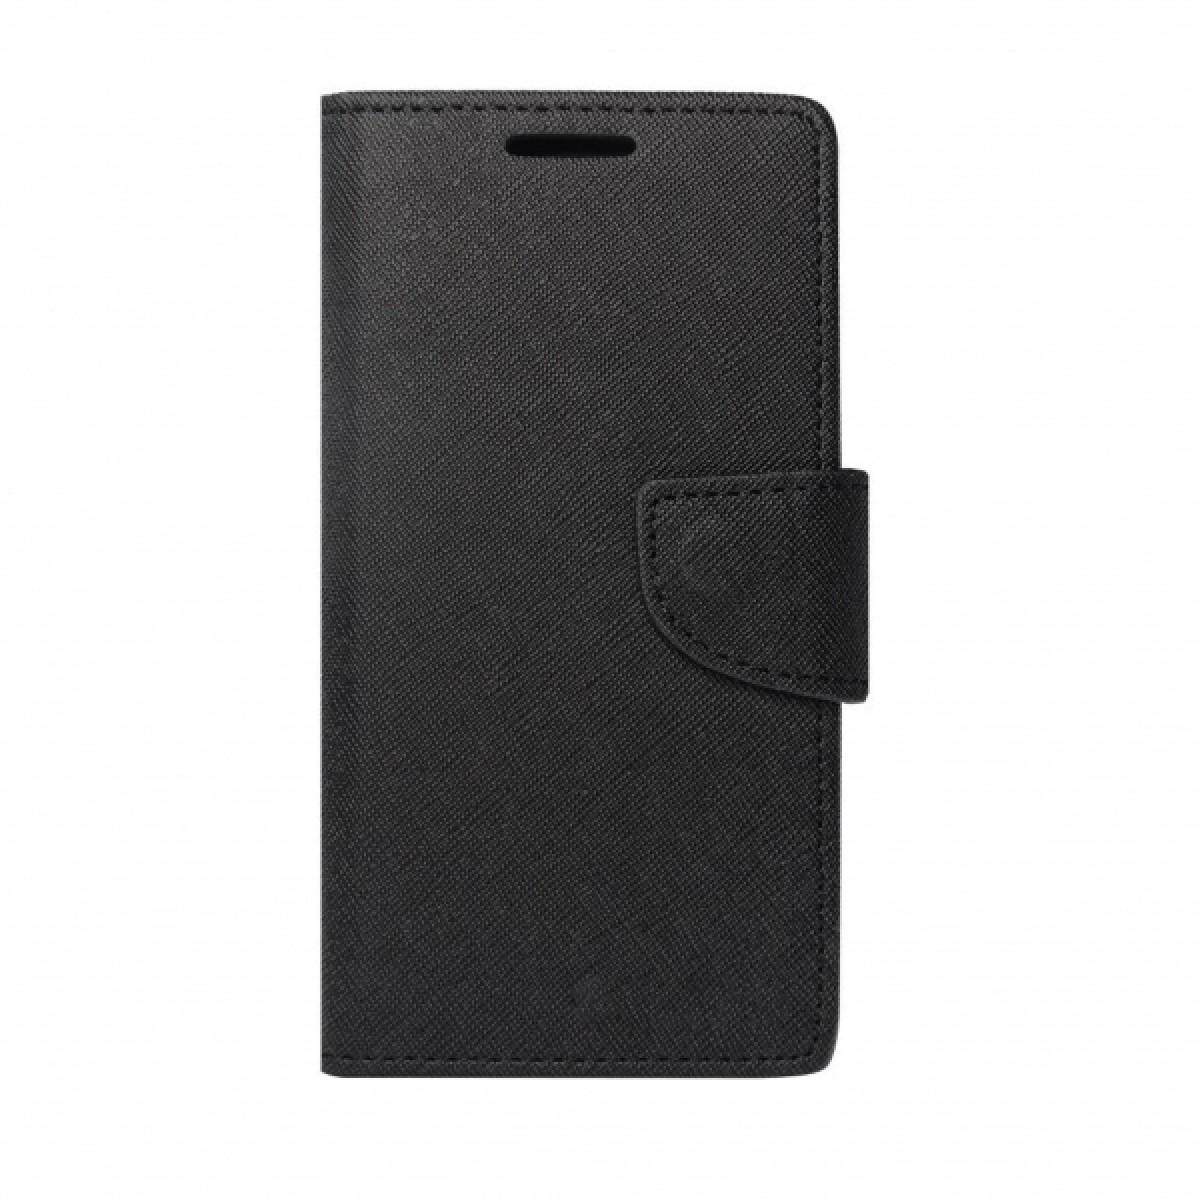 Θήκη για Xiaomi Mi Note 10 iS Fancy Book Black BFXIANOTE10B